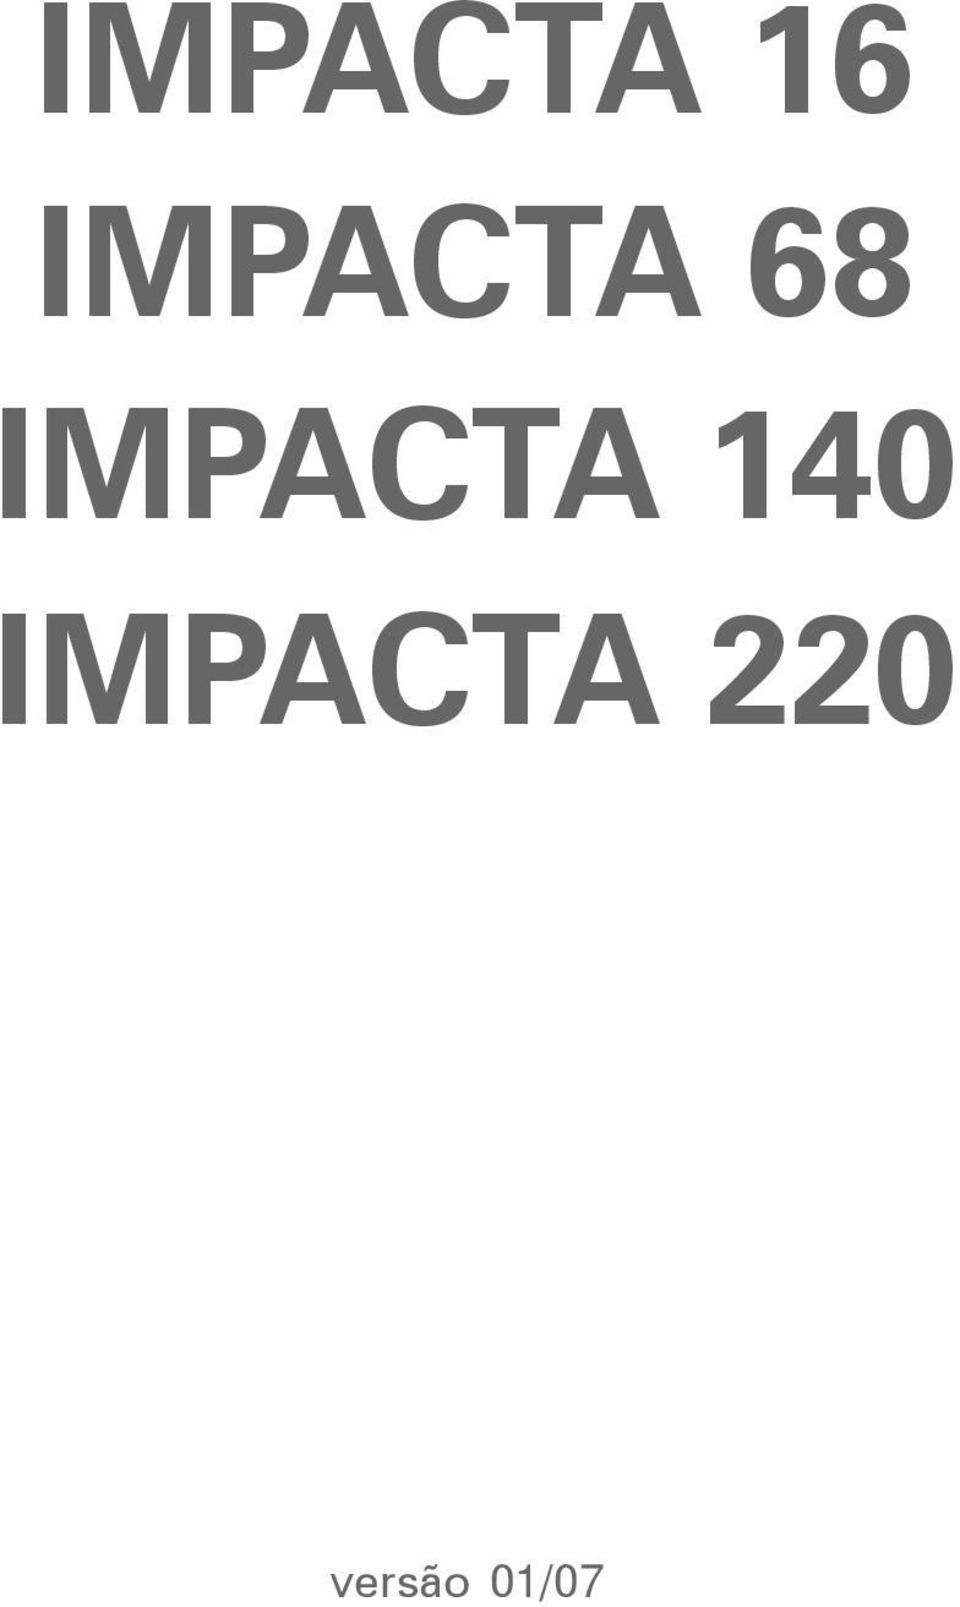 IMPACTA 140